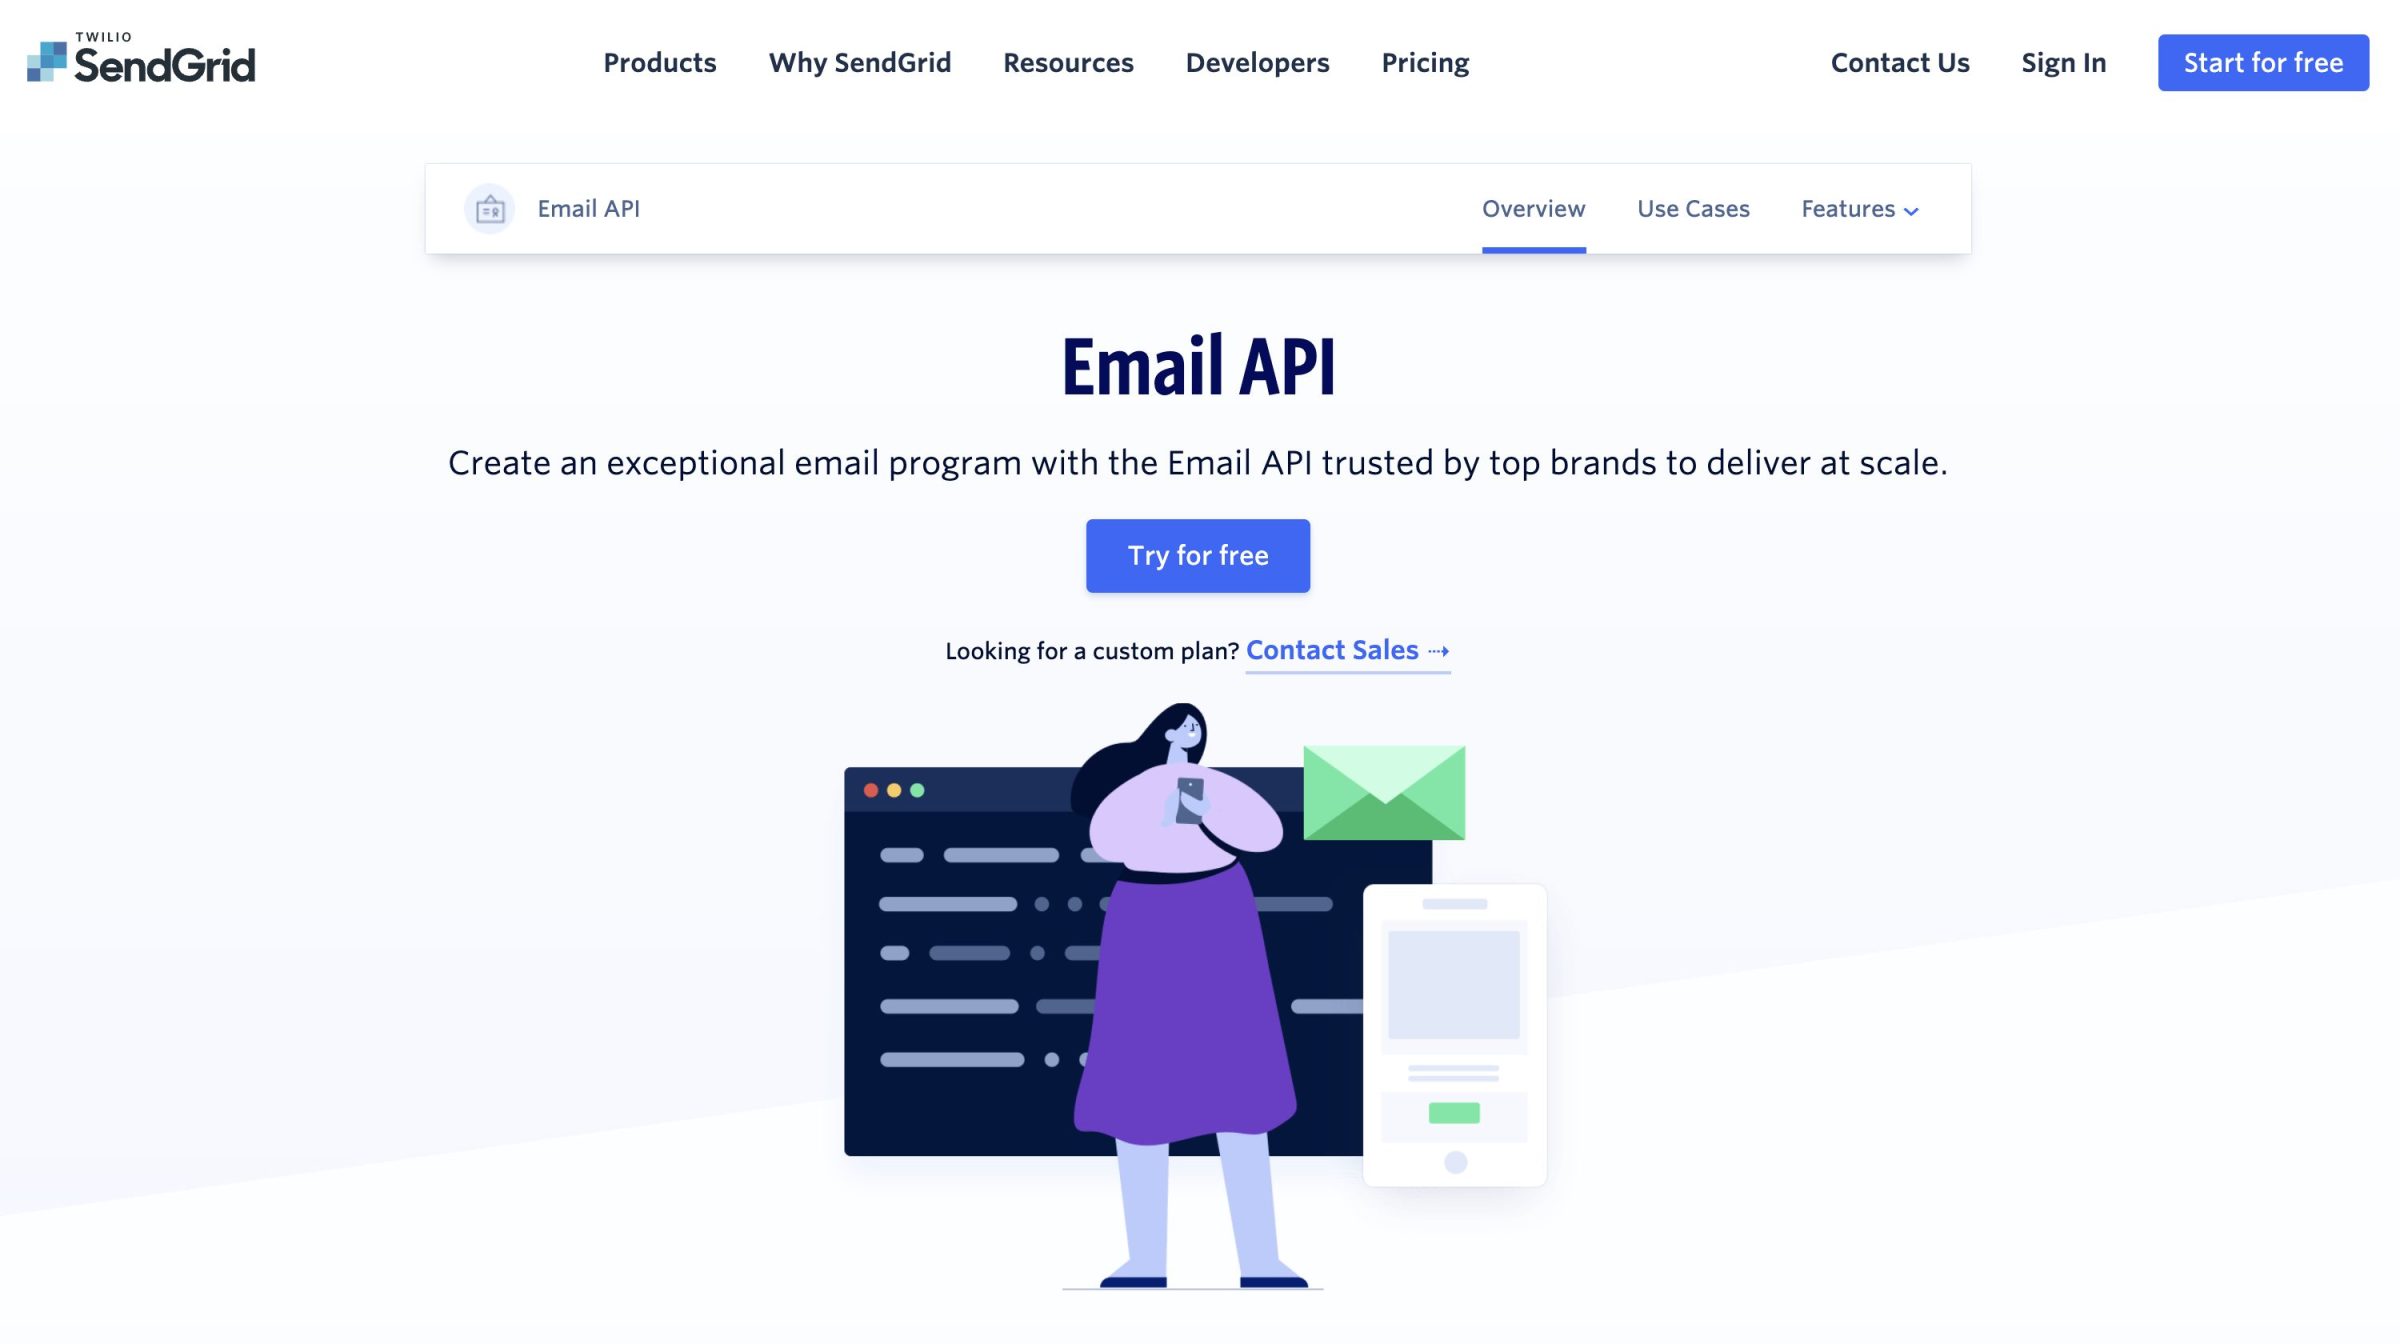 SendGrid Email API landing page